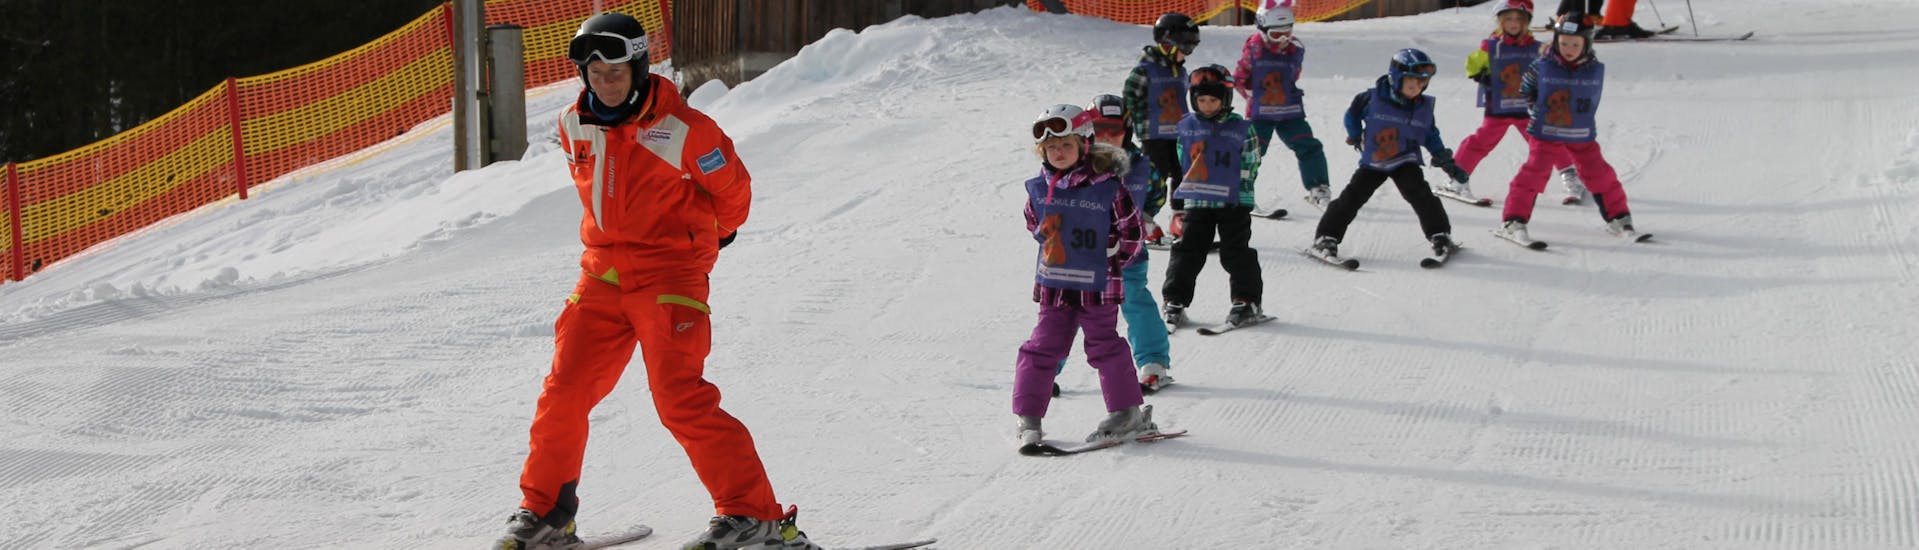 Familienlehrer mit Skischule Gosau - Hero image